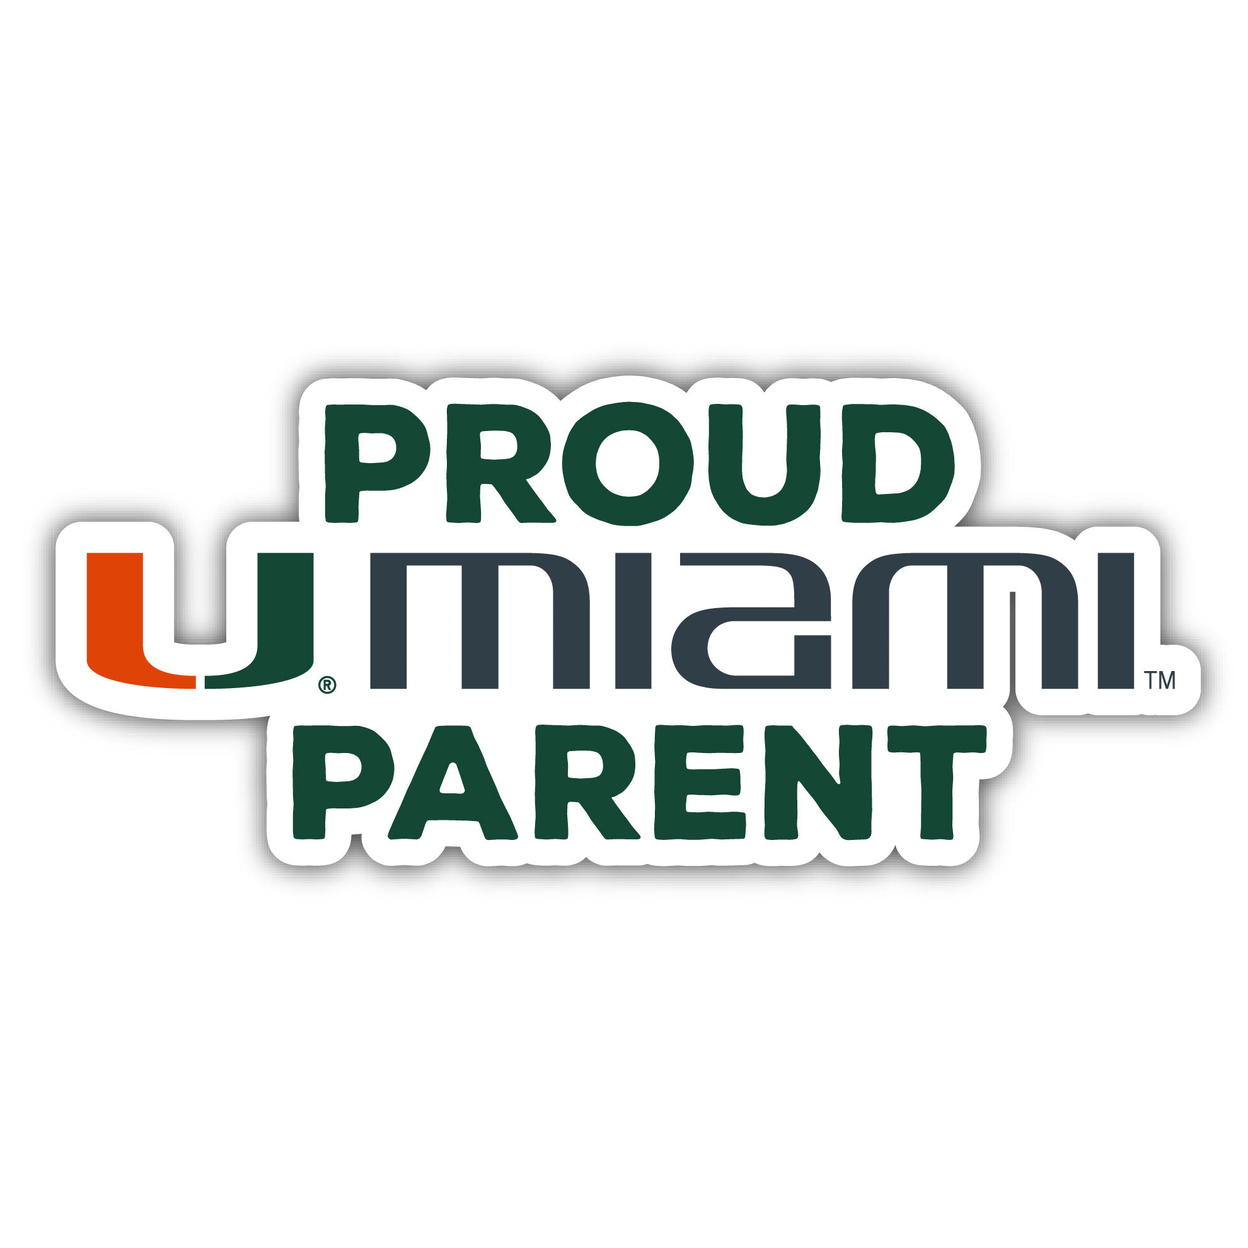 Miami Hurricanes Proud Parent 4 Sticker